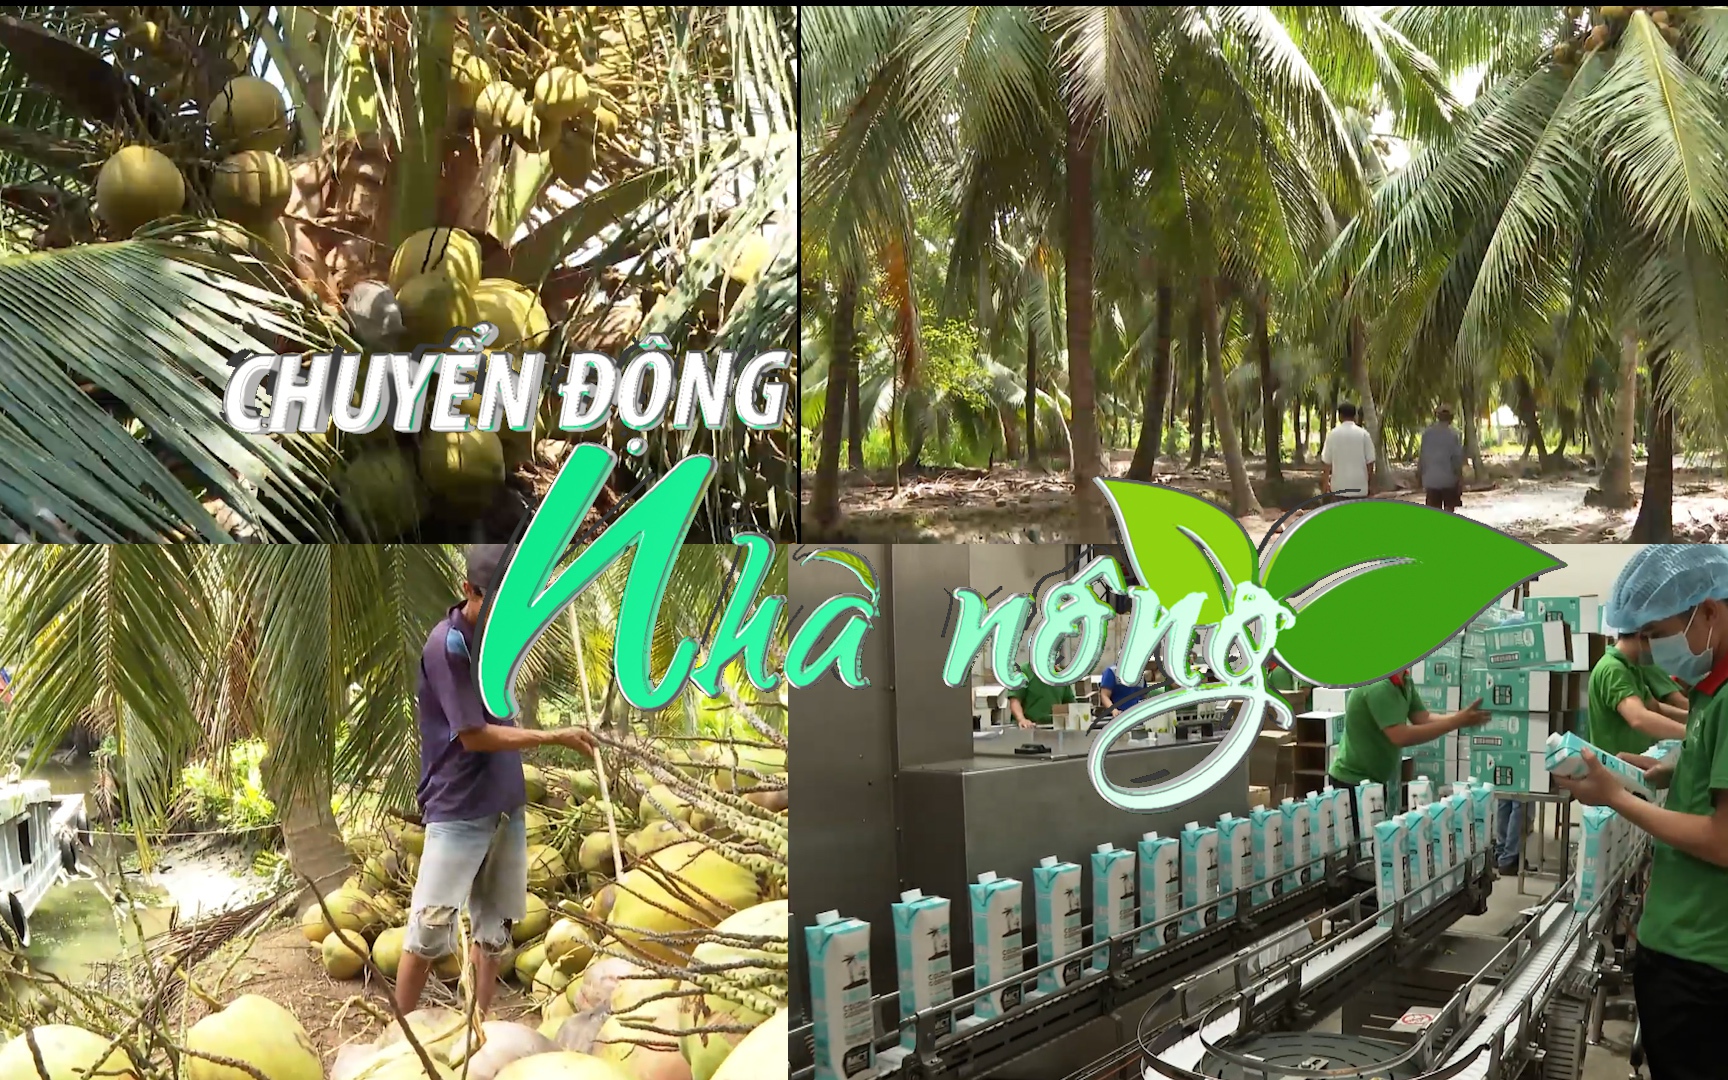 Chuyển động Nhà nông 30/1: Cây dừa Bến Tre trở thành cây công nghiệp chủ lực Quốc gia